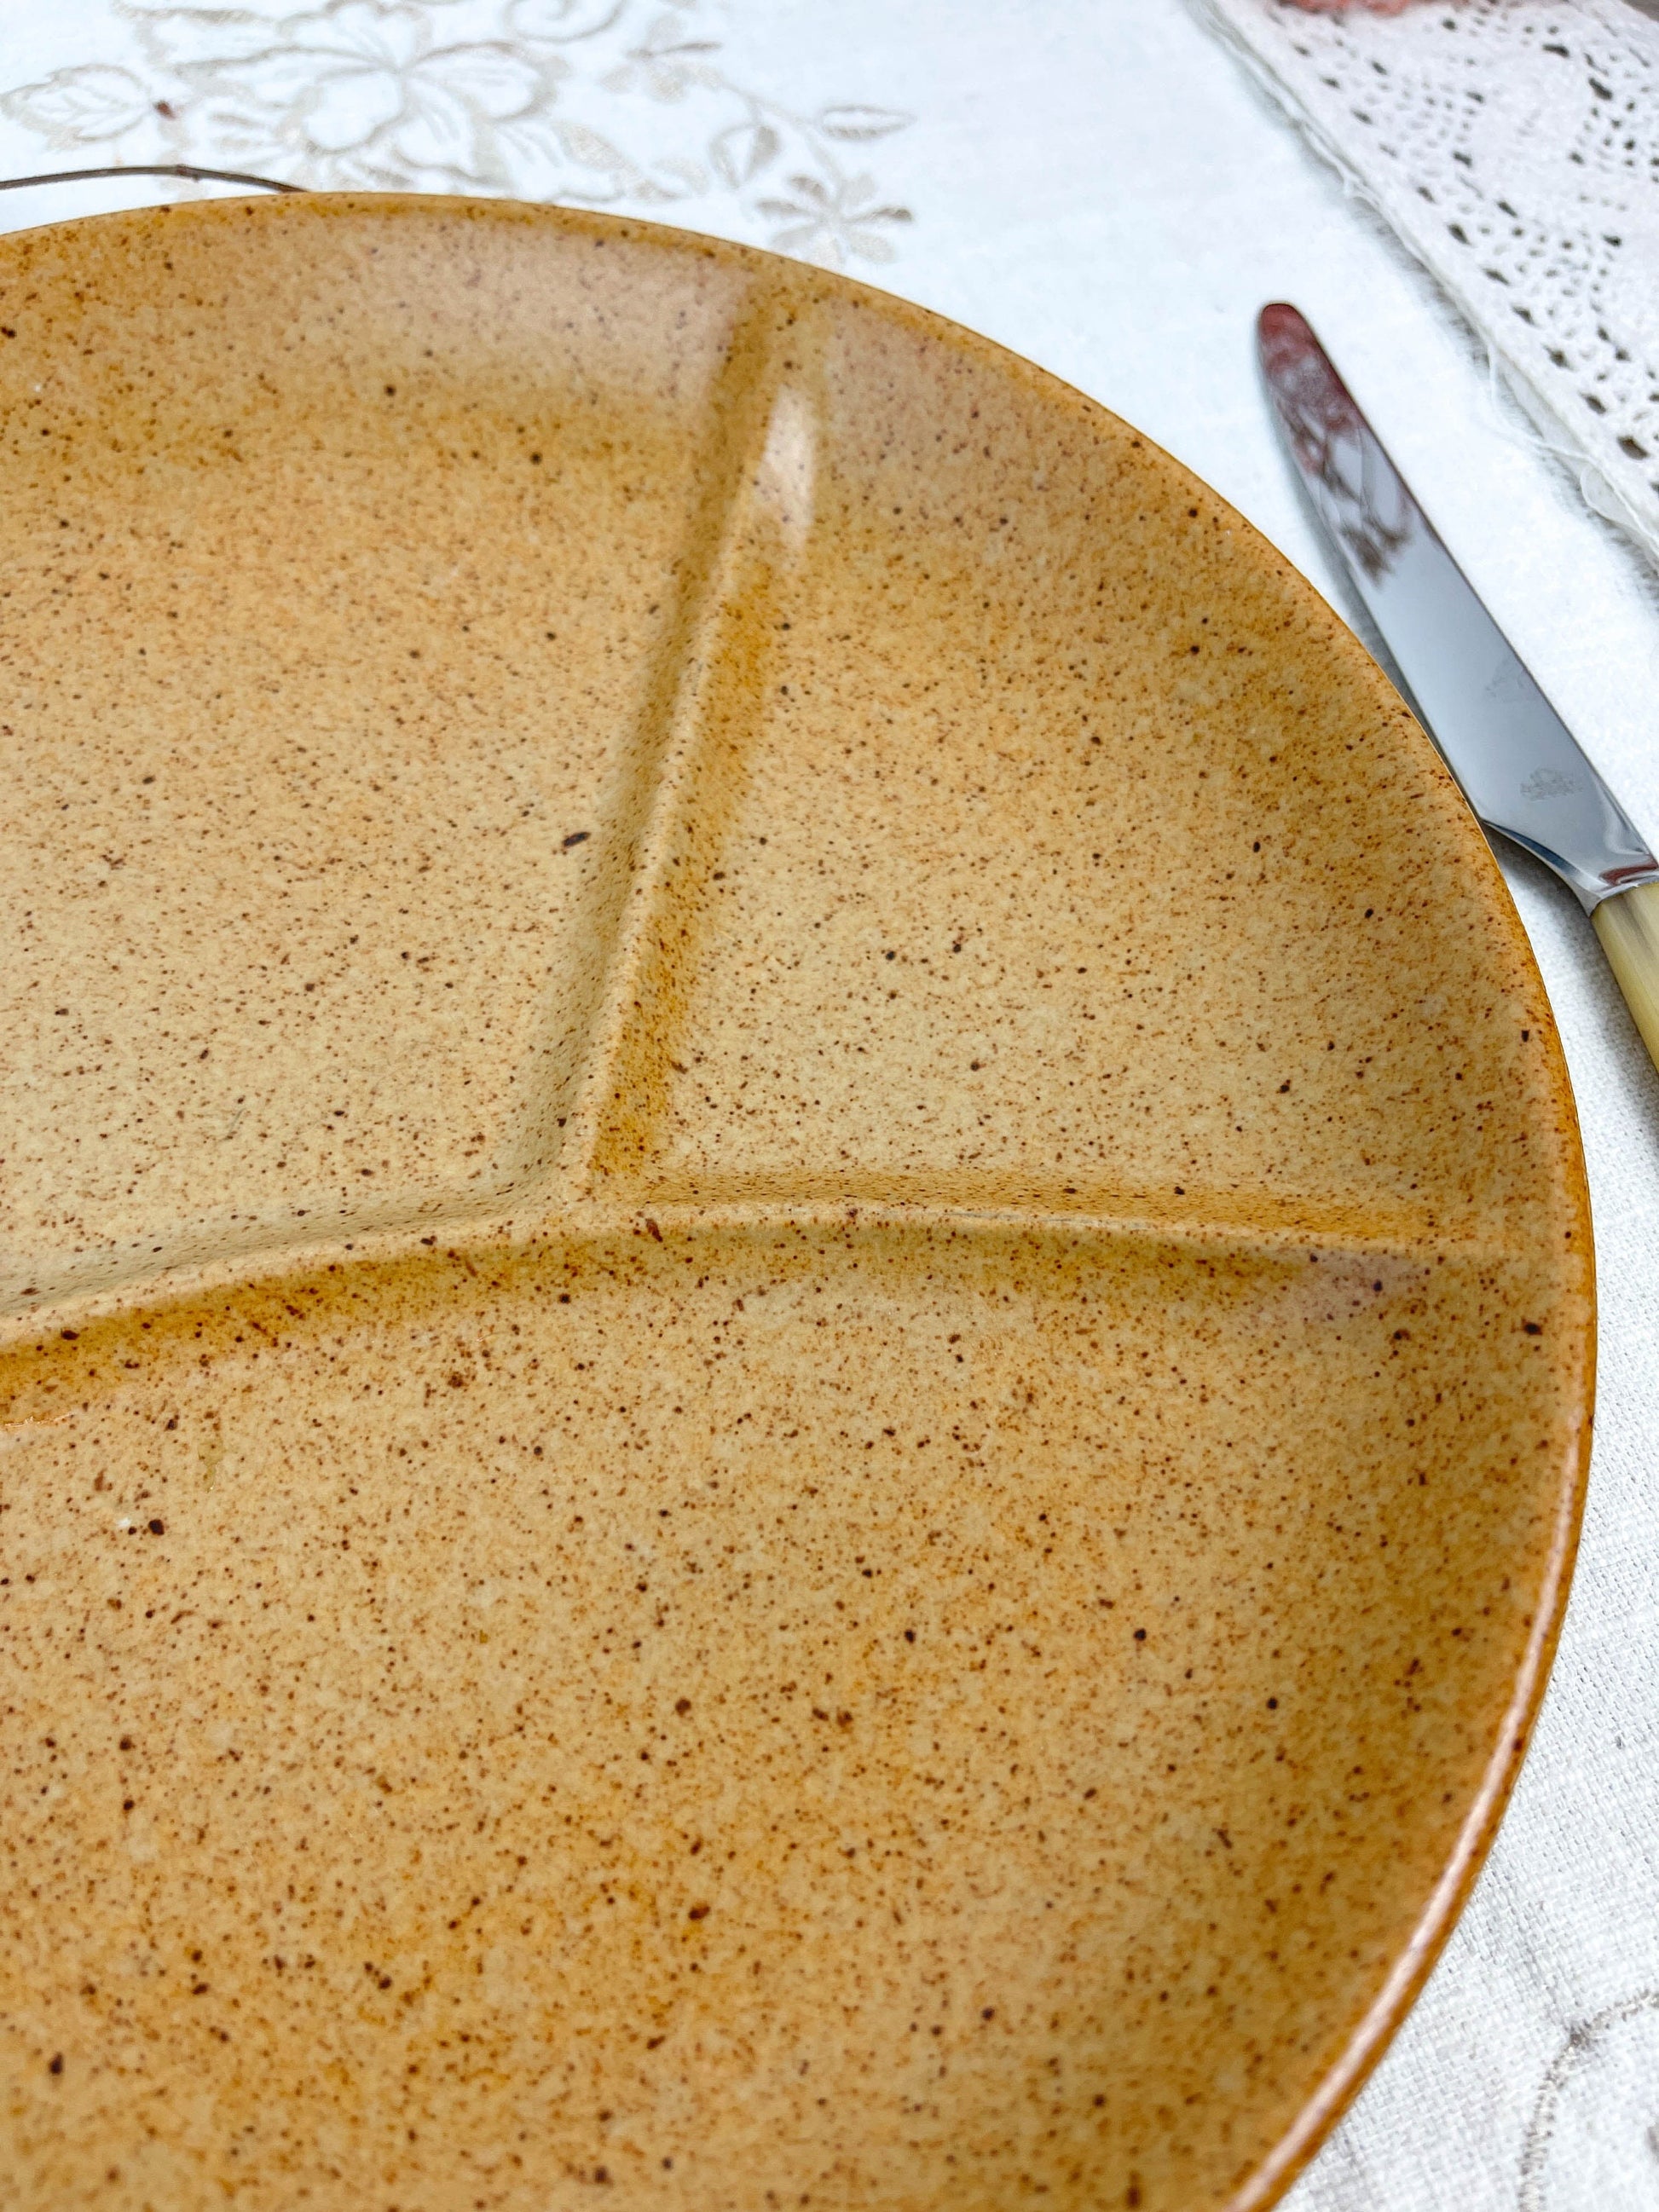 2 Assiettes à fondue en céramique ambre Made in France 1970 –